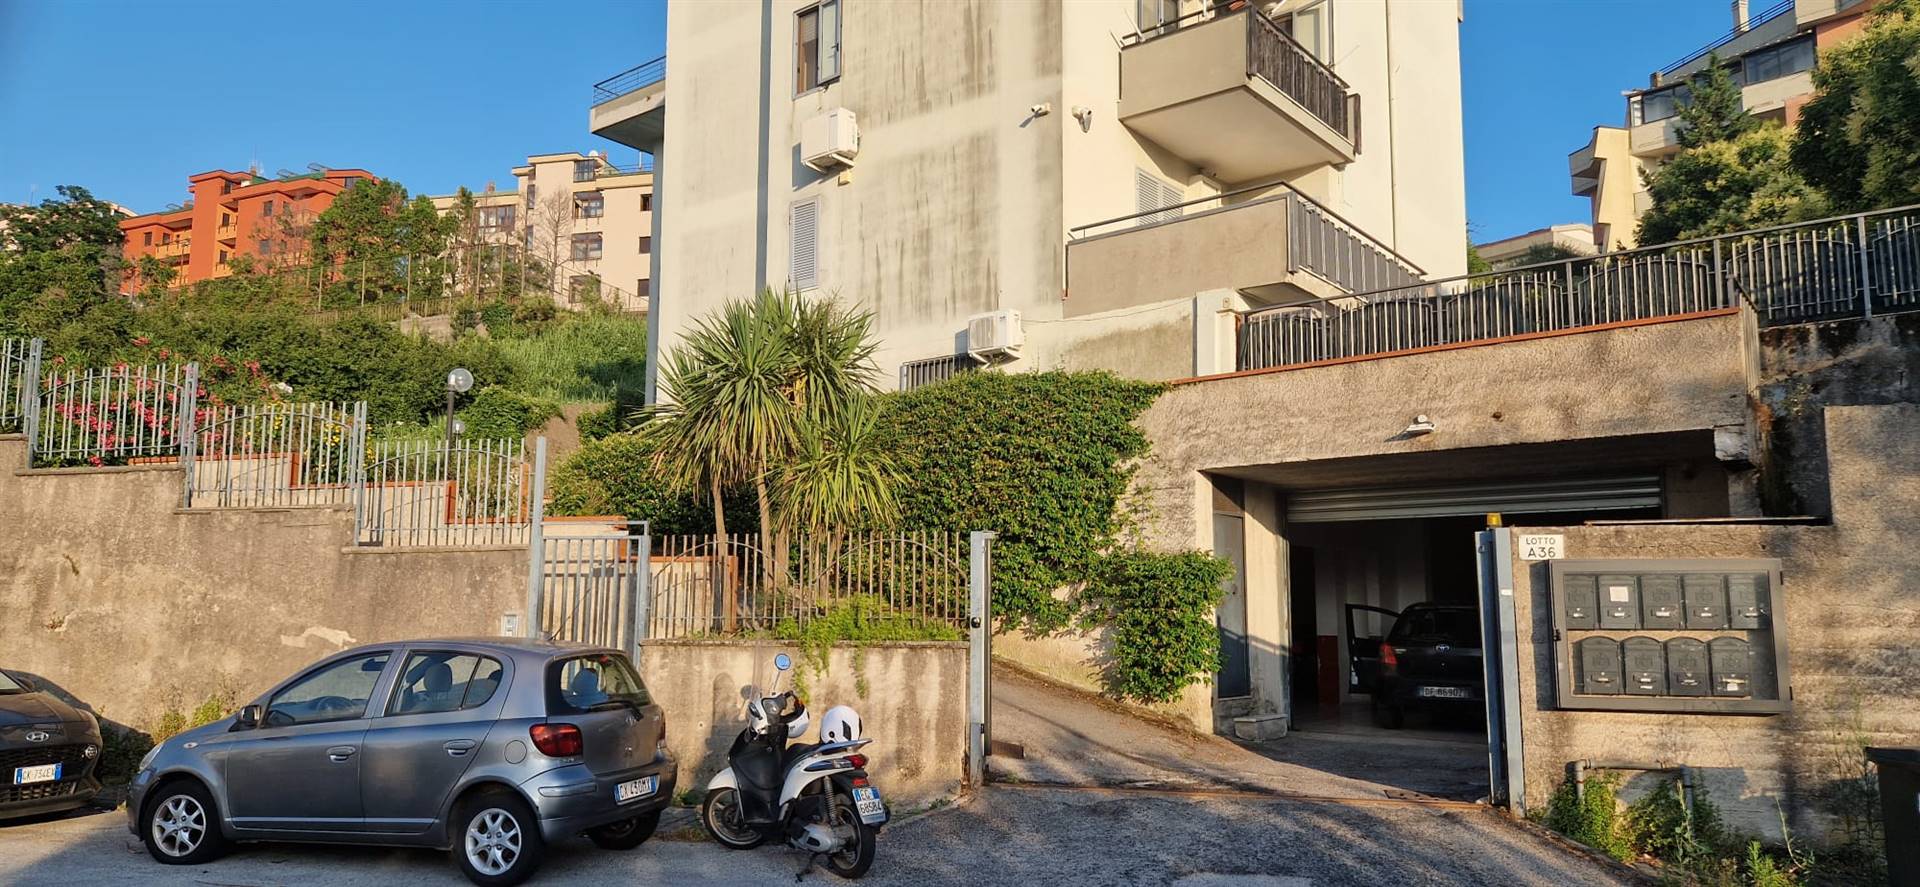 Appartamento in vendita a Salerno, 1 locali, zona Località: GINESTRE / SALA ABBAGNANO / PANORAMICA / CASA MANZO, prezzo € 68.000 | PortaleAgenzieImmobiliari.it